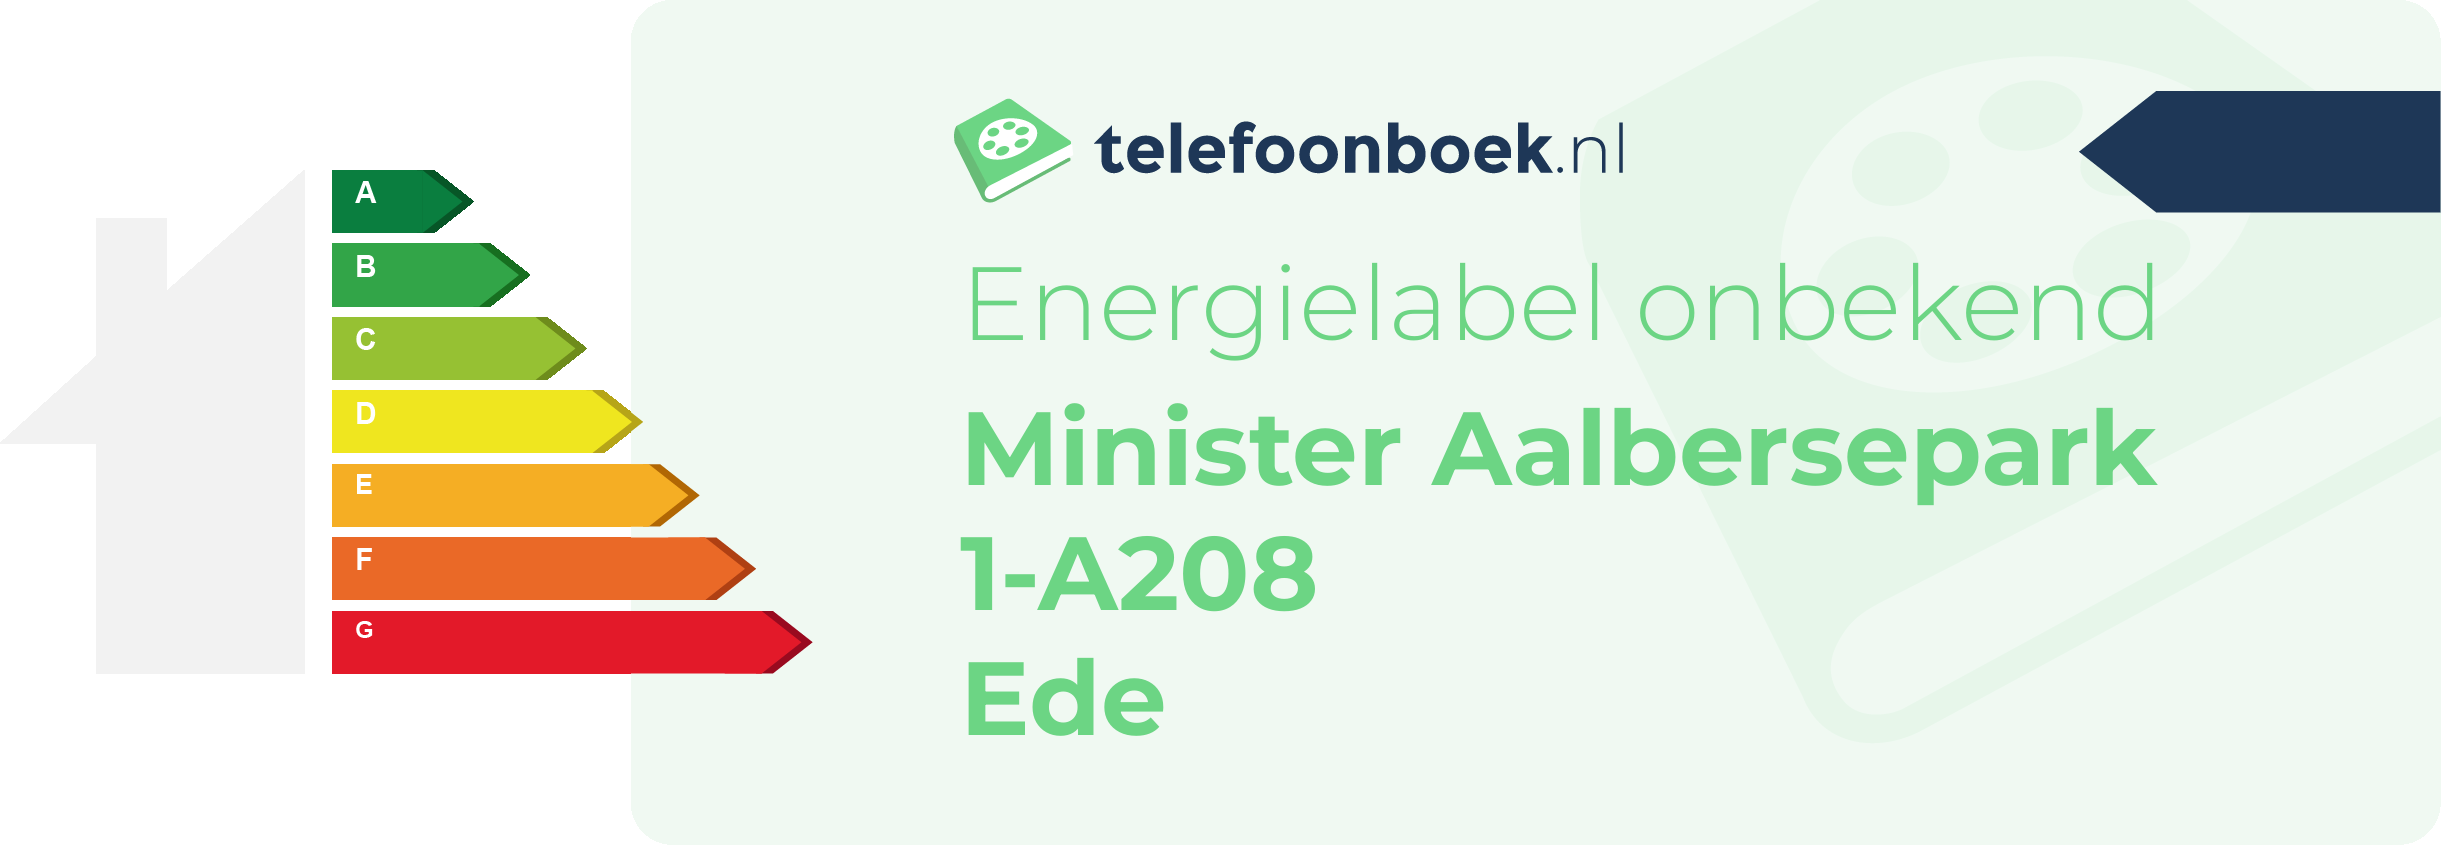 Energielabel Minister Aalbersepark 1-A208 Ede